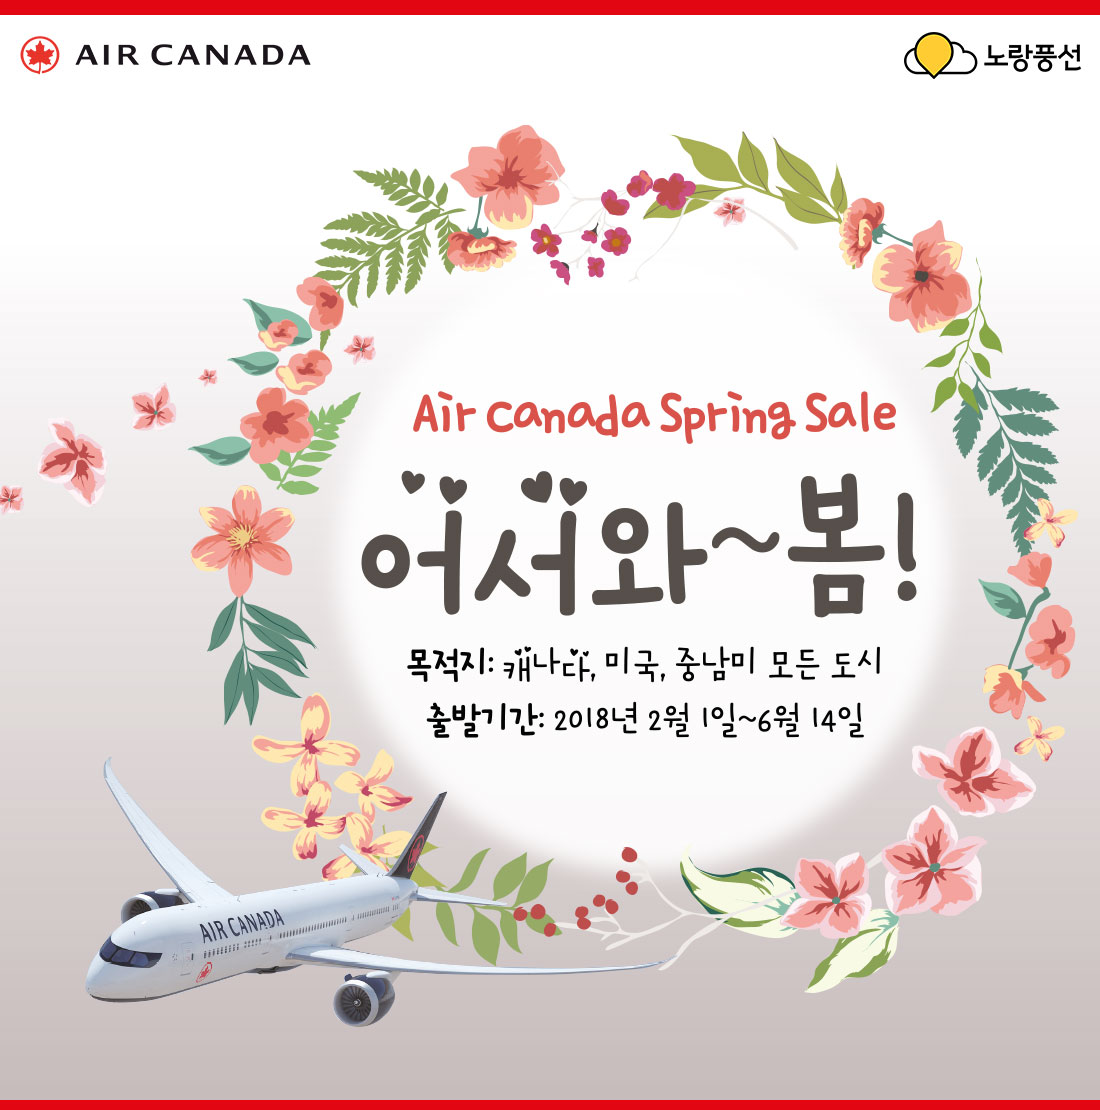 AIR CANADA. Air canada Spring Sale 어서와~봄! 목적지 : 캐나다, 미국, 중남미 모든 도시. 출발기간 : 2018년 2월 1일 ~ 6월 14일